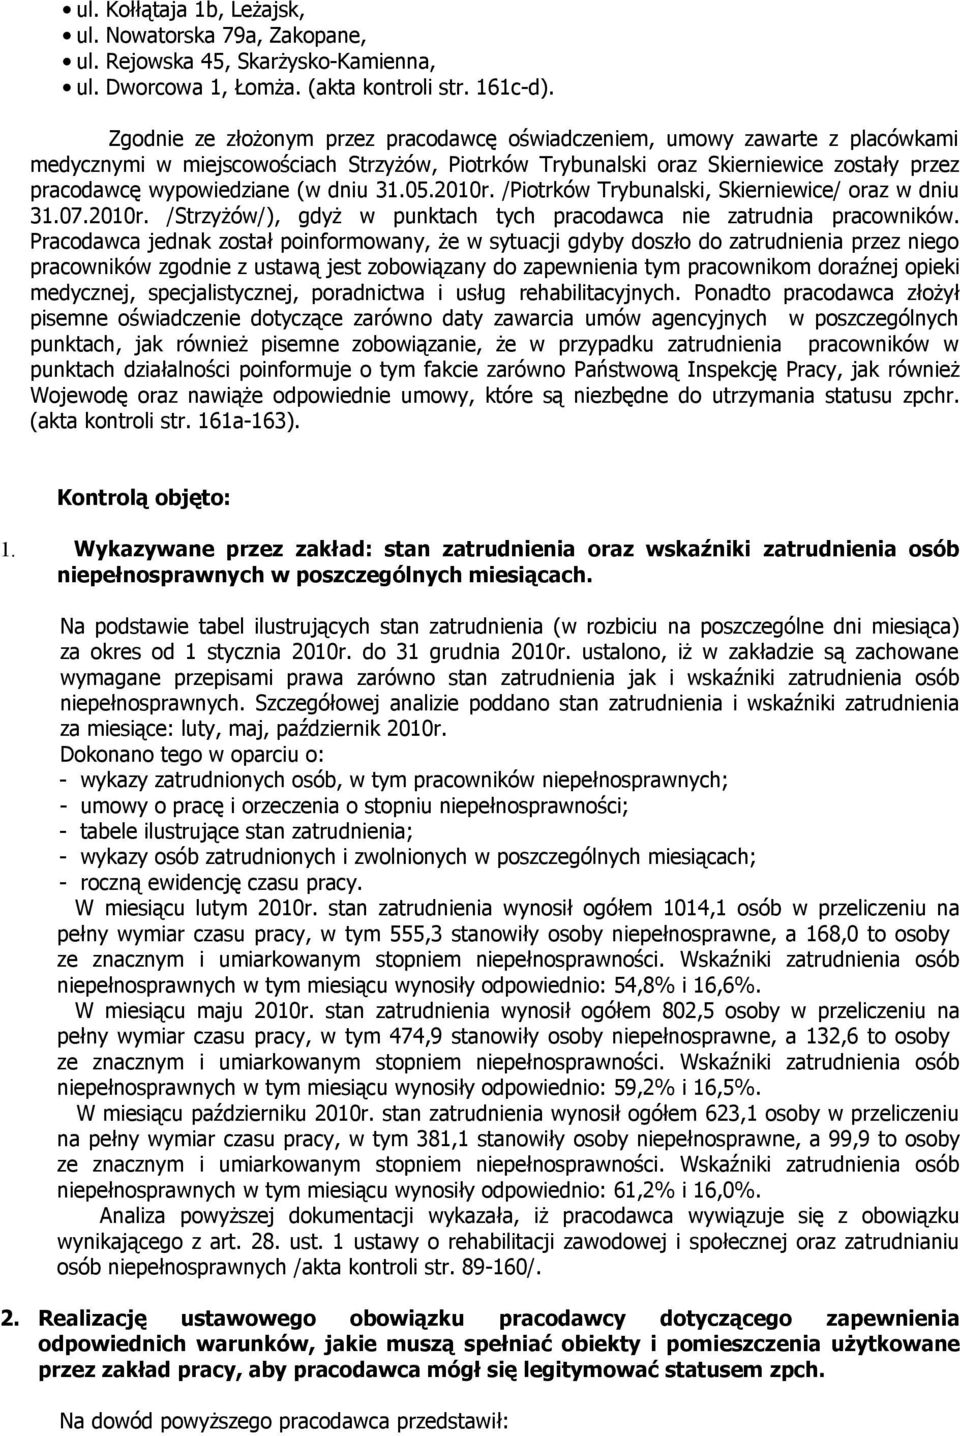 dniu 31.05.2010r. /Piotrków Trybunalski, Skierniewice/ oraz w dniu 31.07.2010r. /Strzyżów/), gdyż w punktach tych pracodawca nie zatrudnia pracowników.